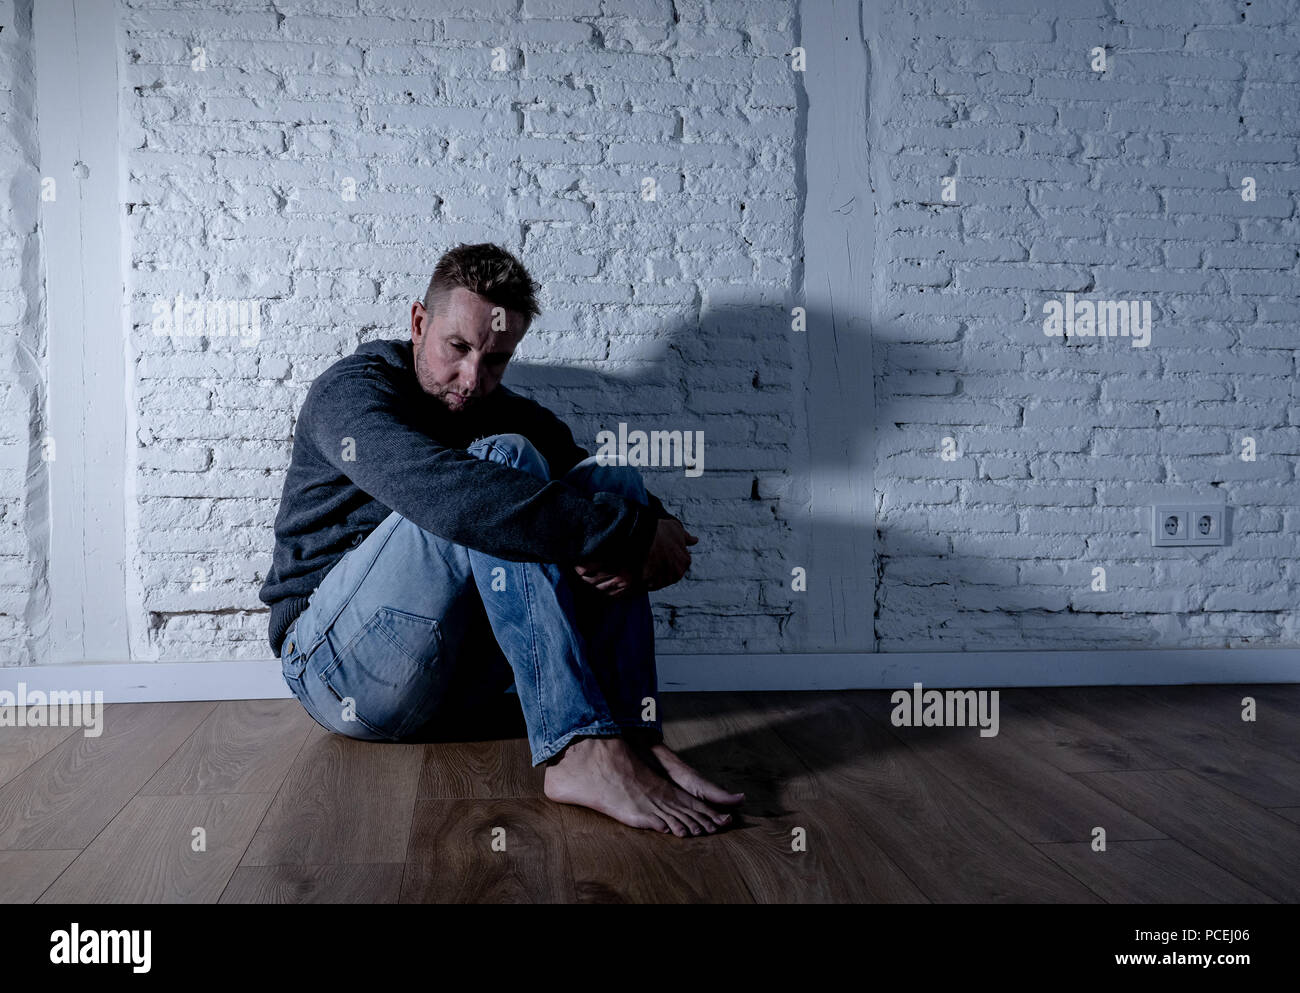 Einsame Menschen, die unter Depressionen leiden Stockfoto